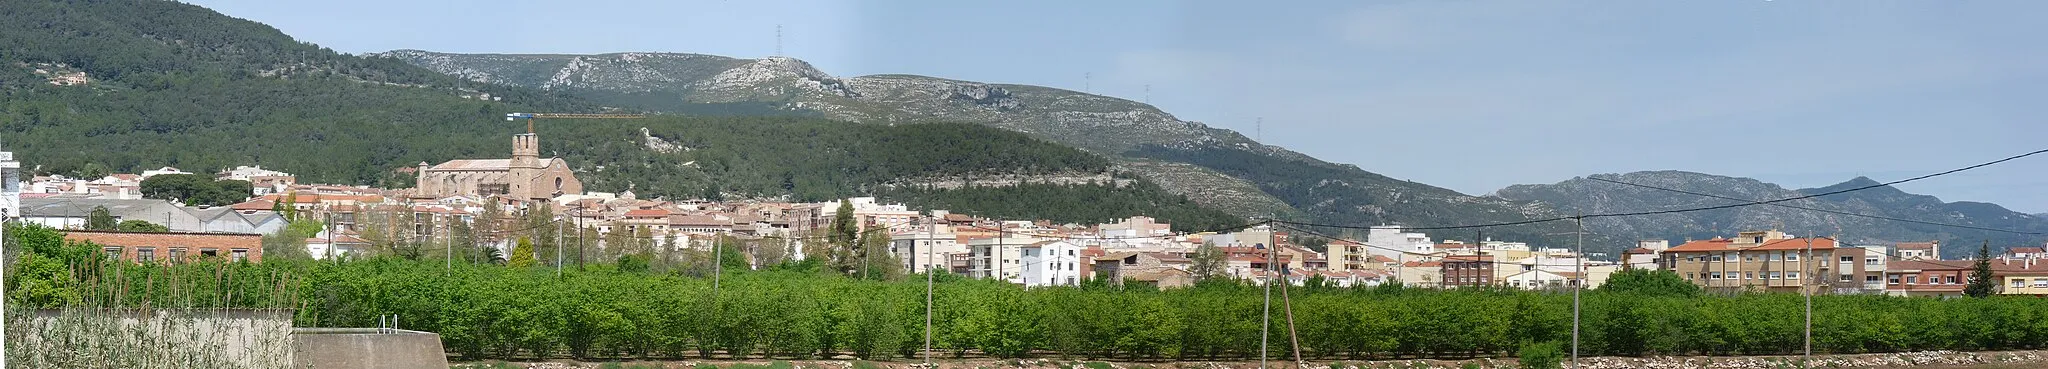 Obrázek Katalánsko